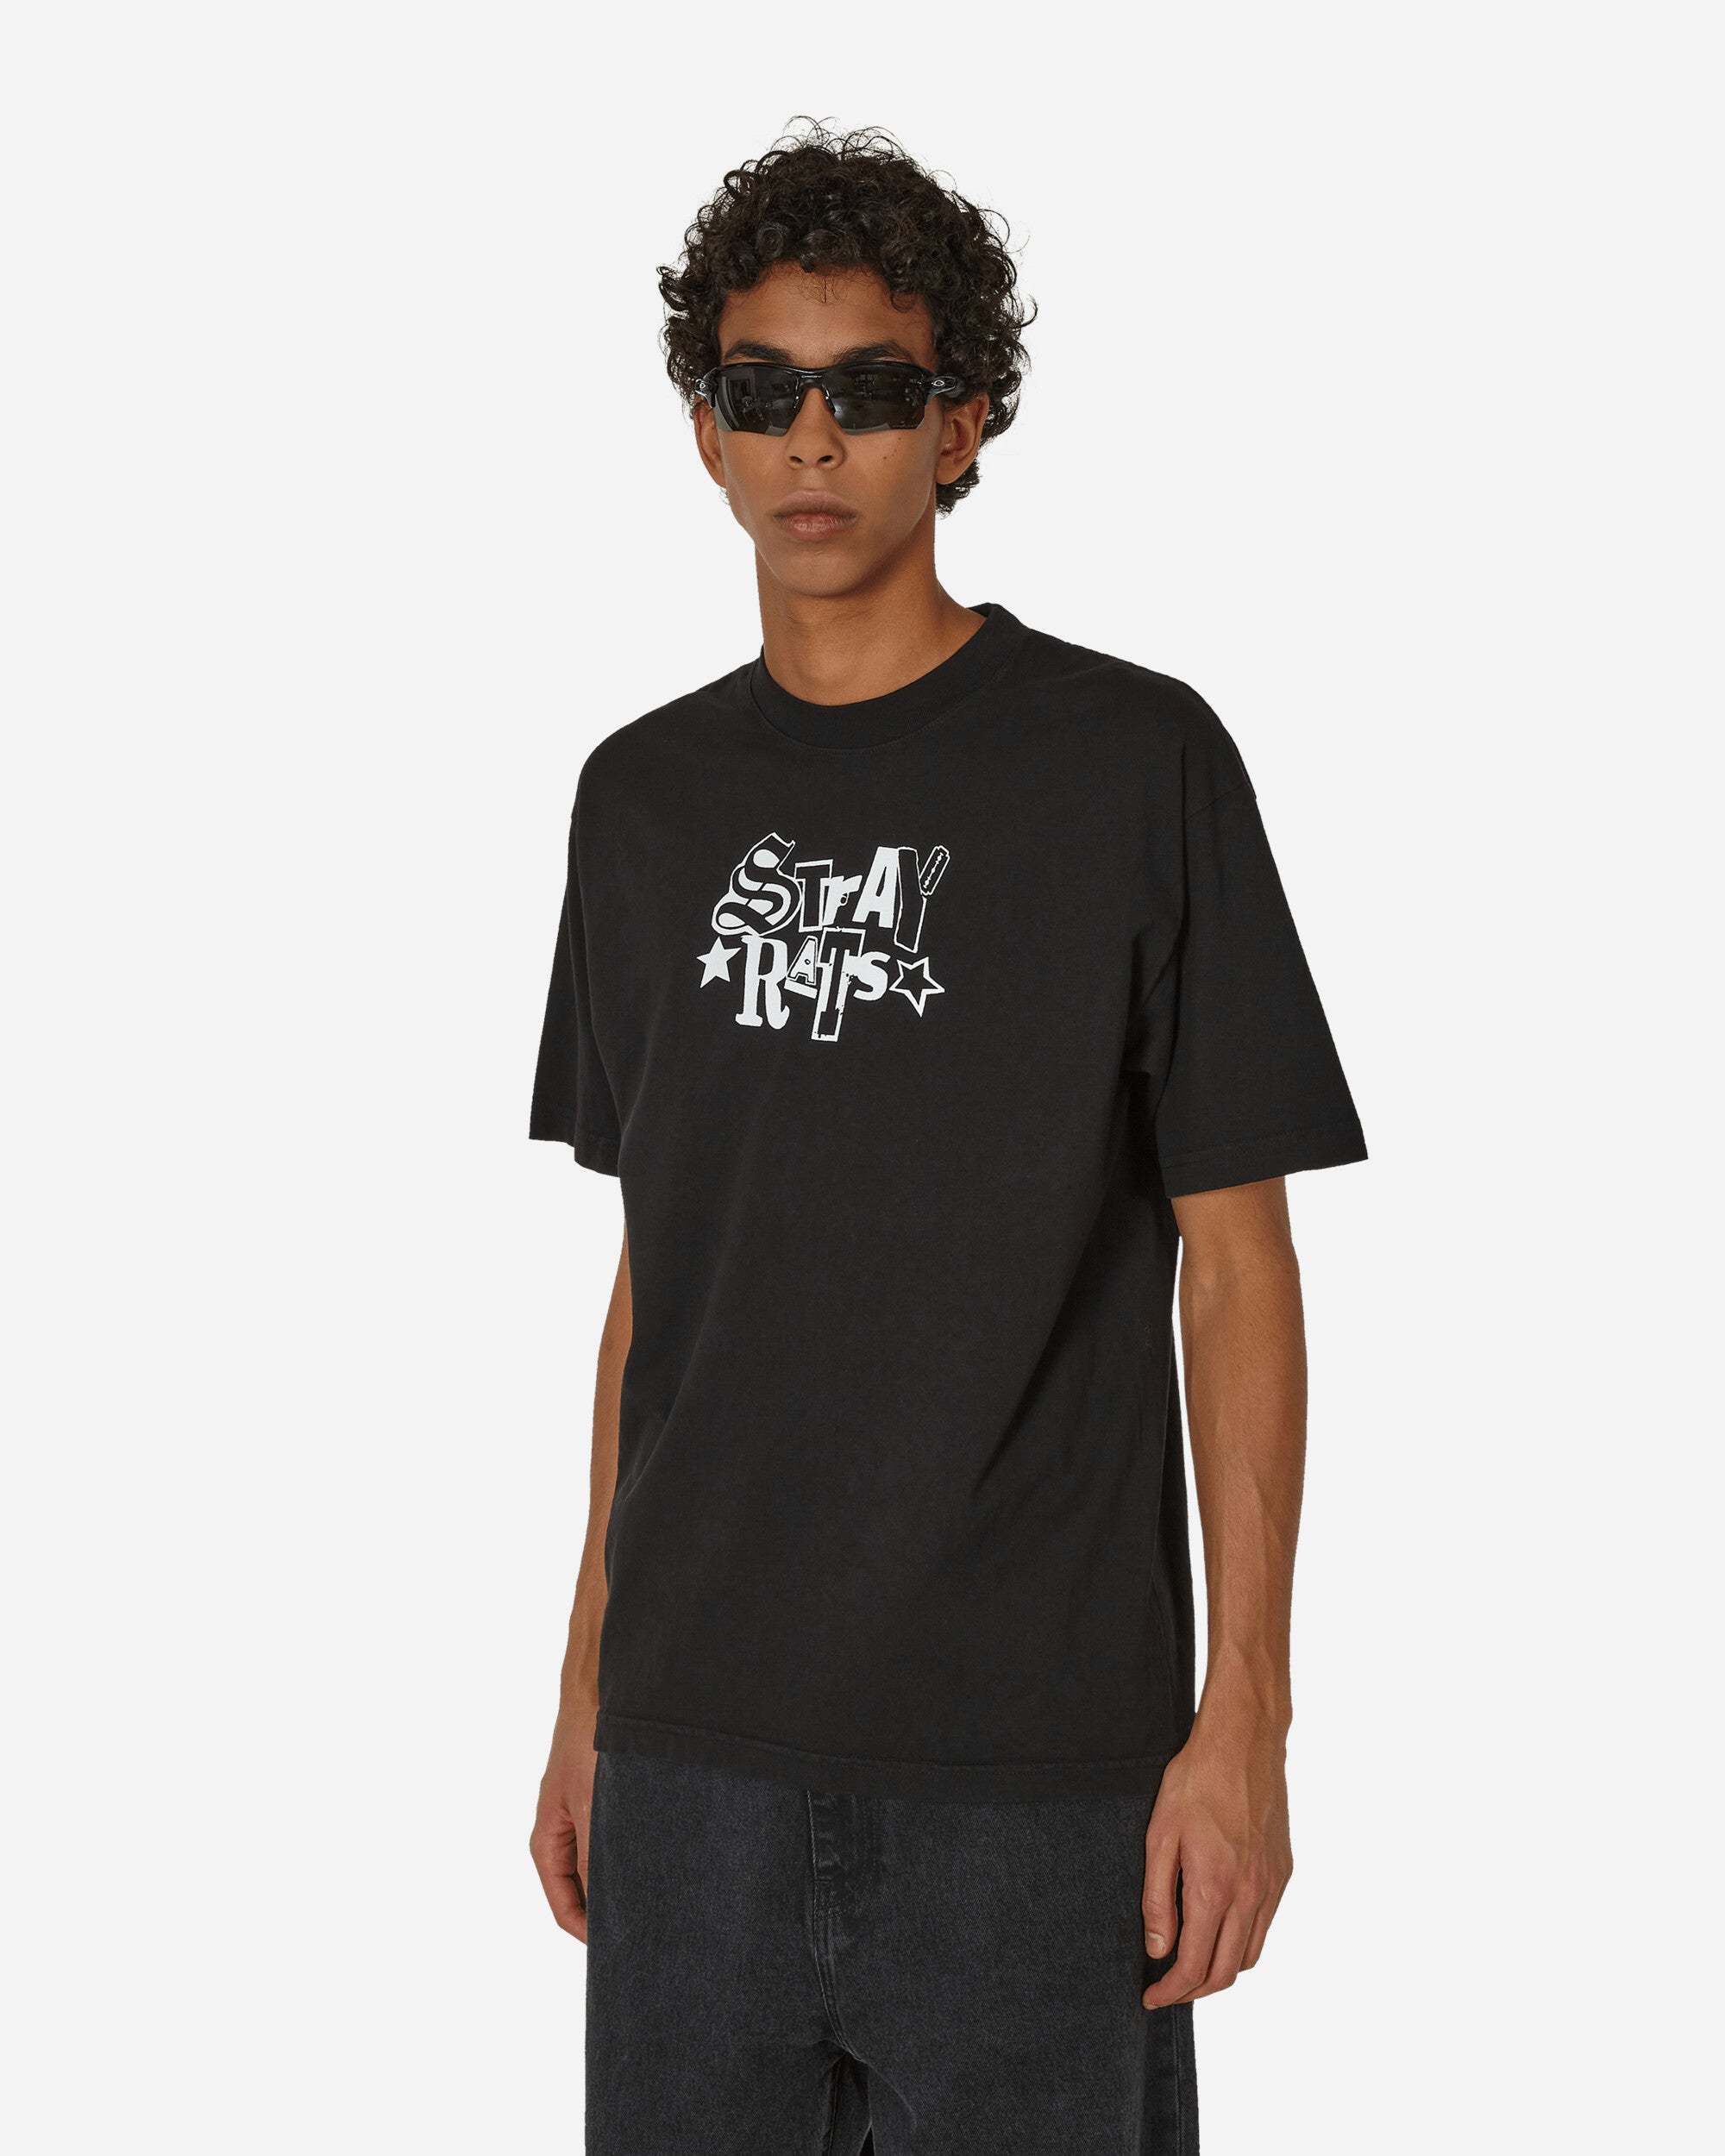 新品 Stray Rats Tee T-shirts Tシャツ XLサイズはXLサイズです